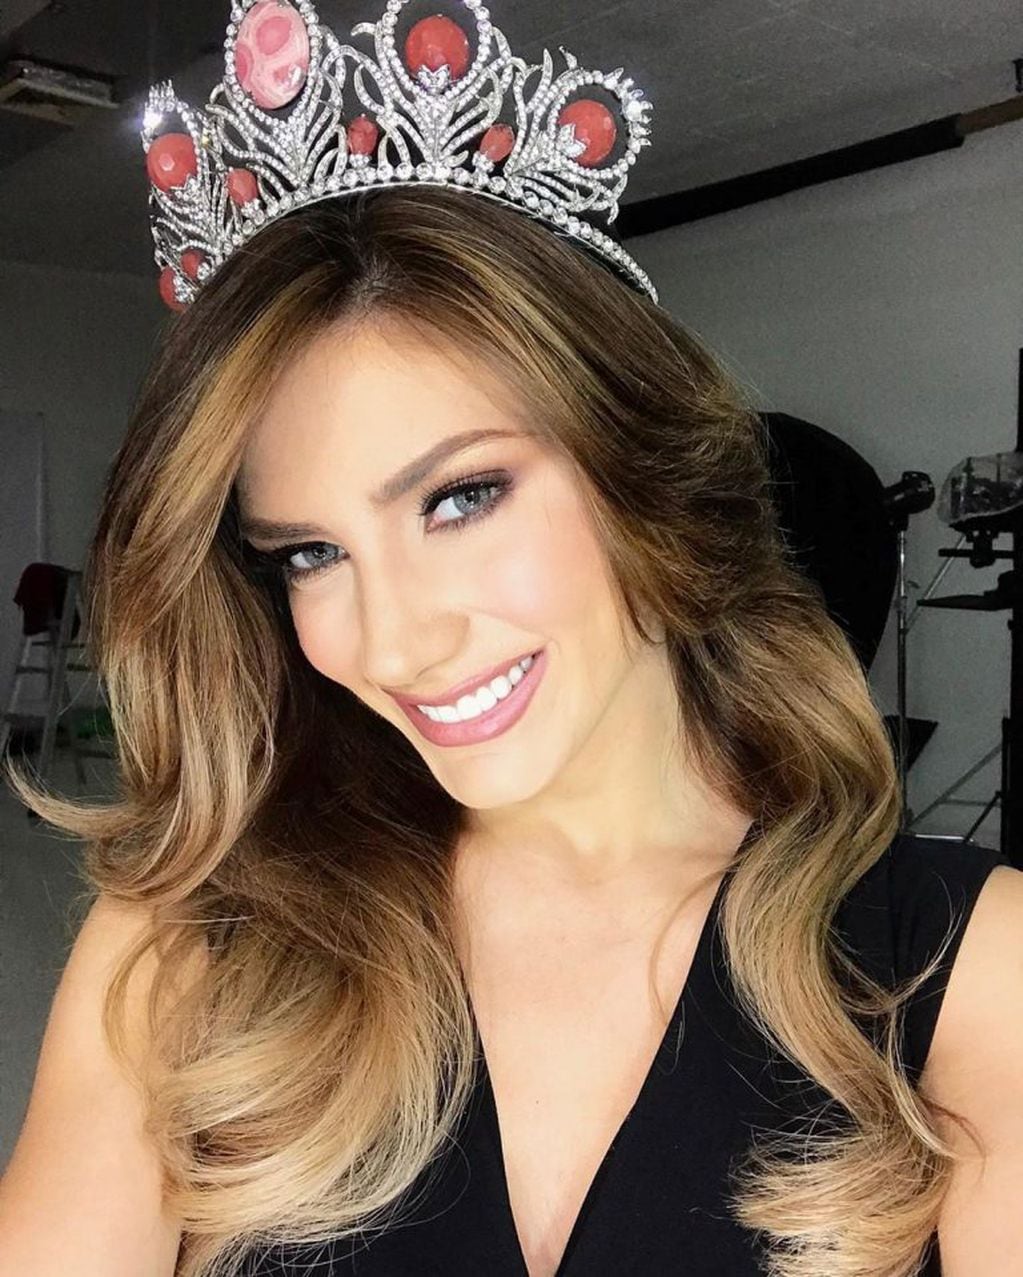 Mariana Varela en la elección previa a su participación en Miss Universo. (CIMECO)